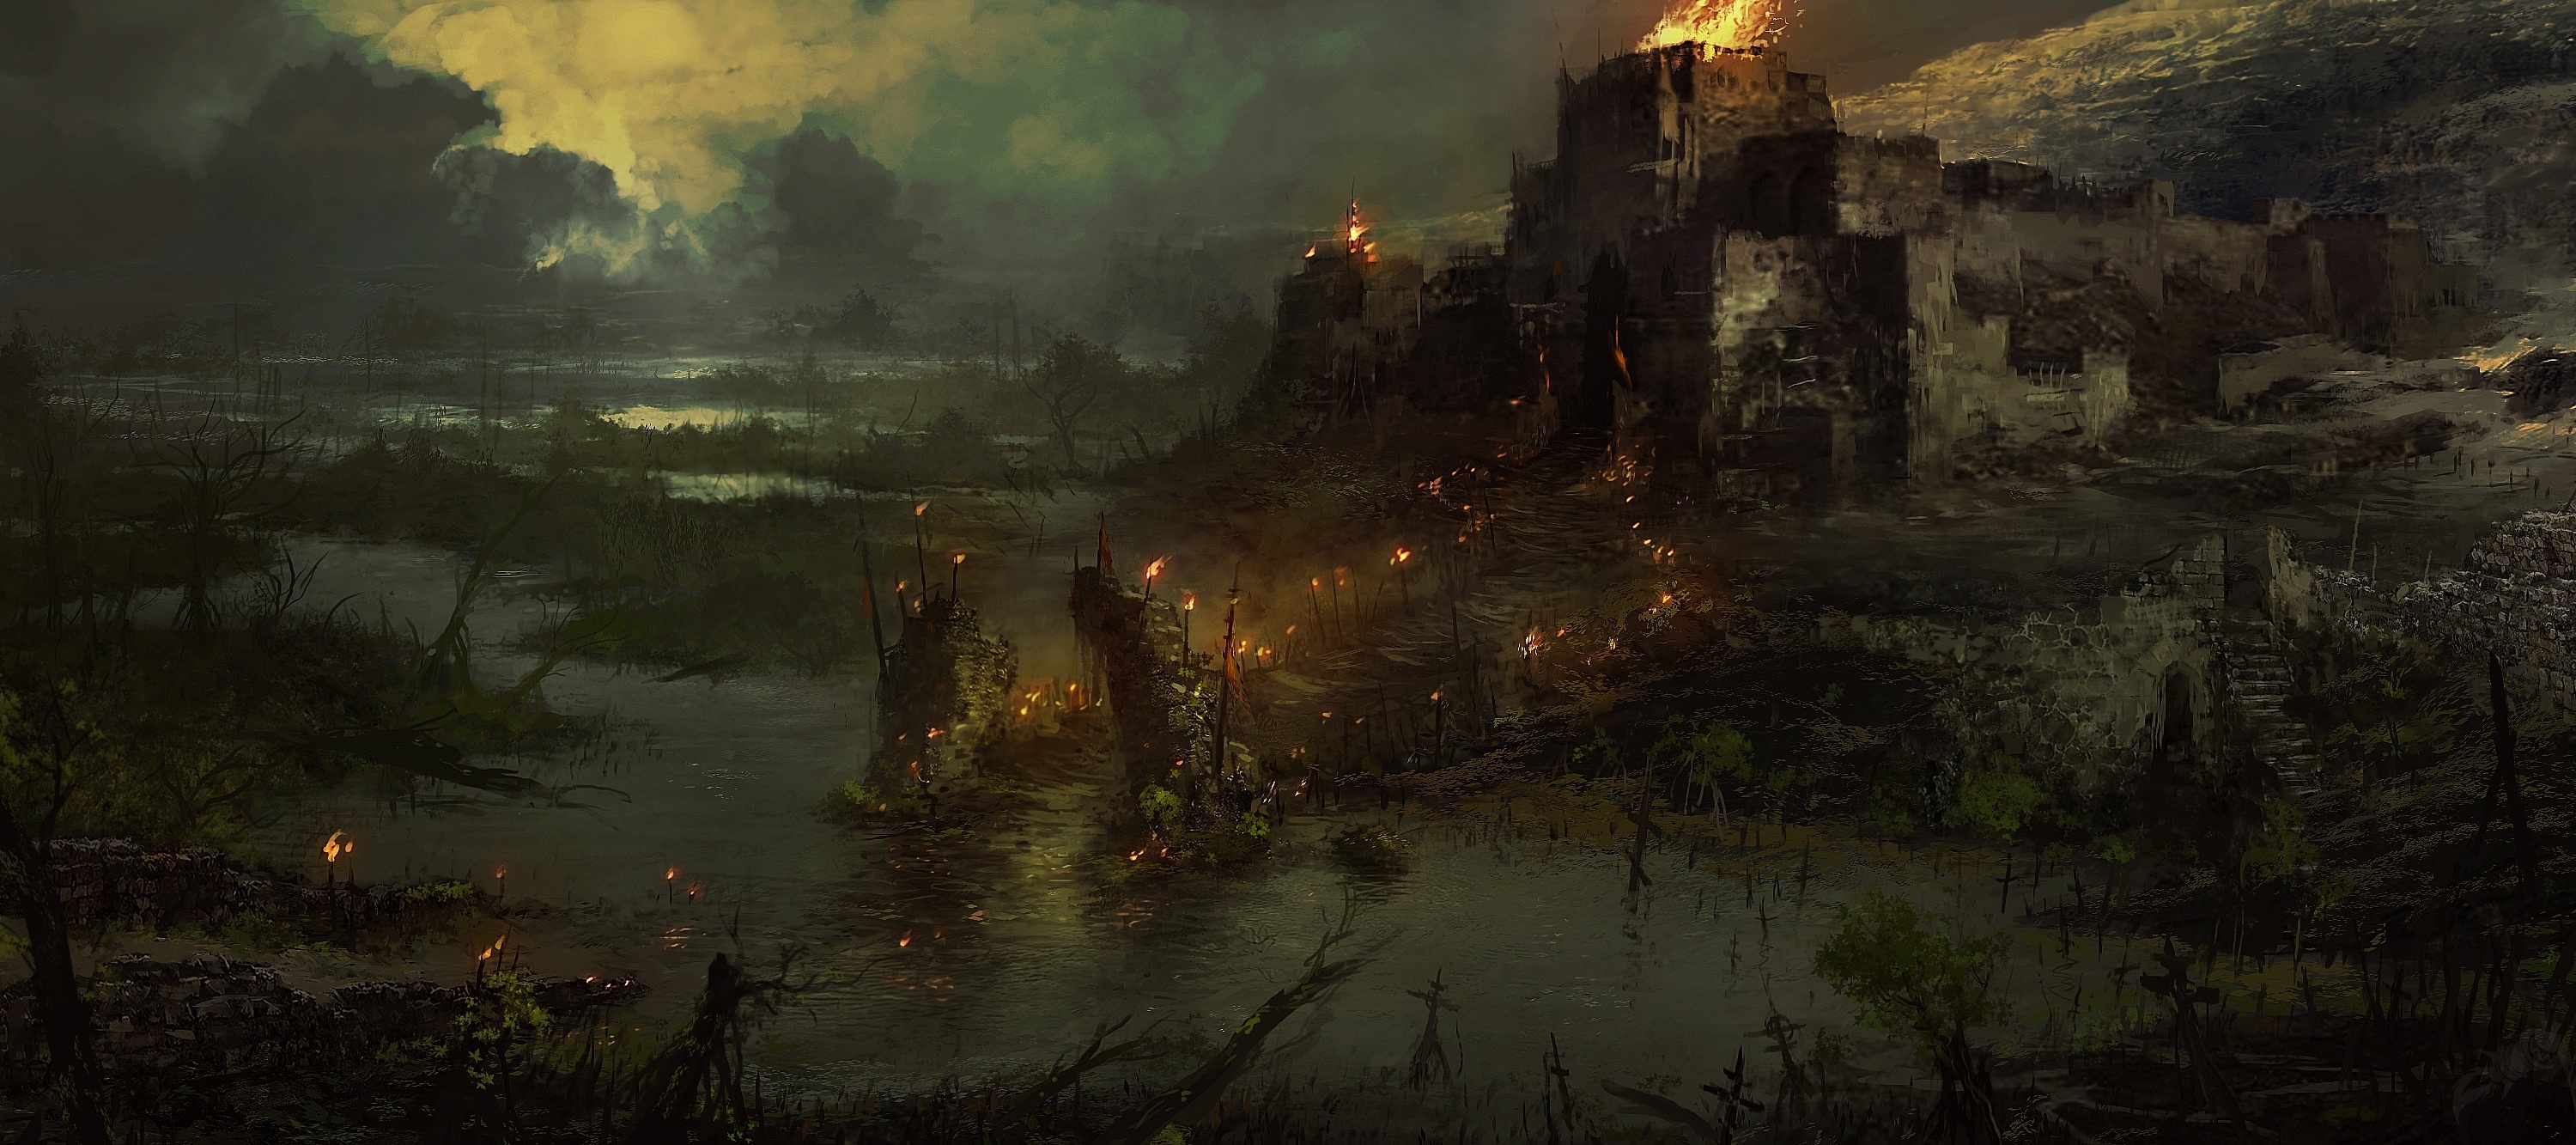 《暗黑破坏神4》概念艺术图及截图 场景壮观画风黑暗